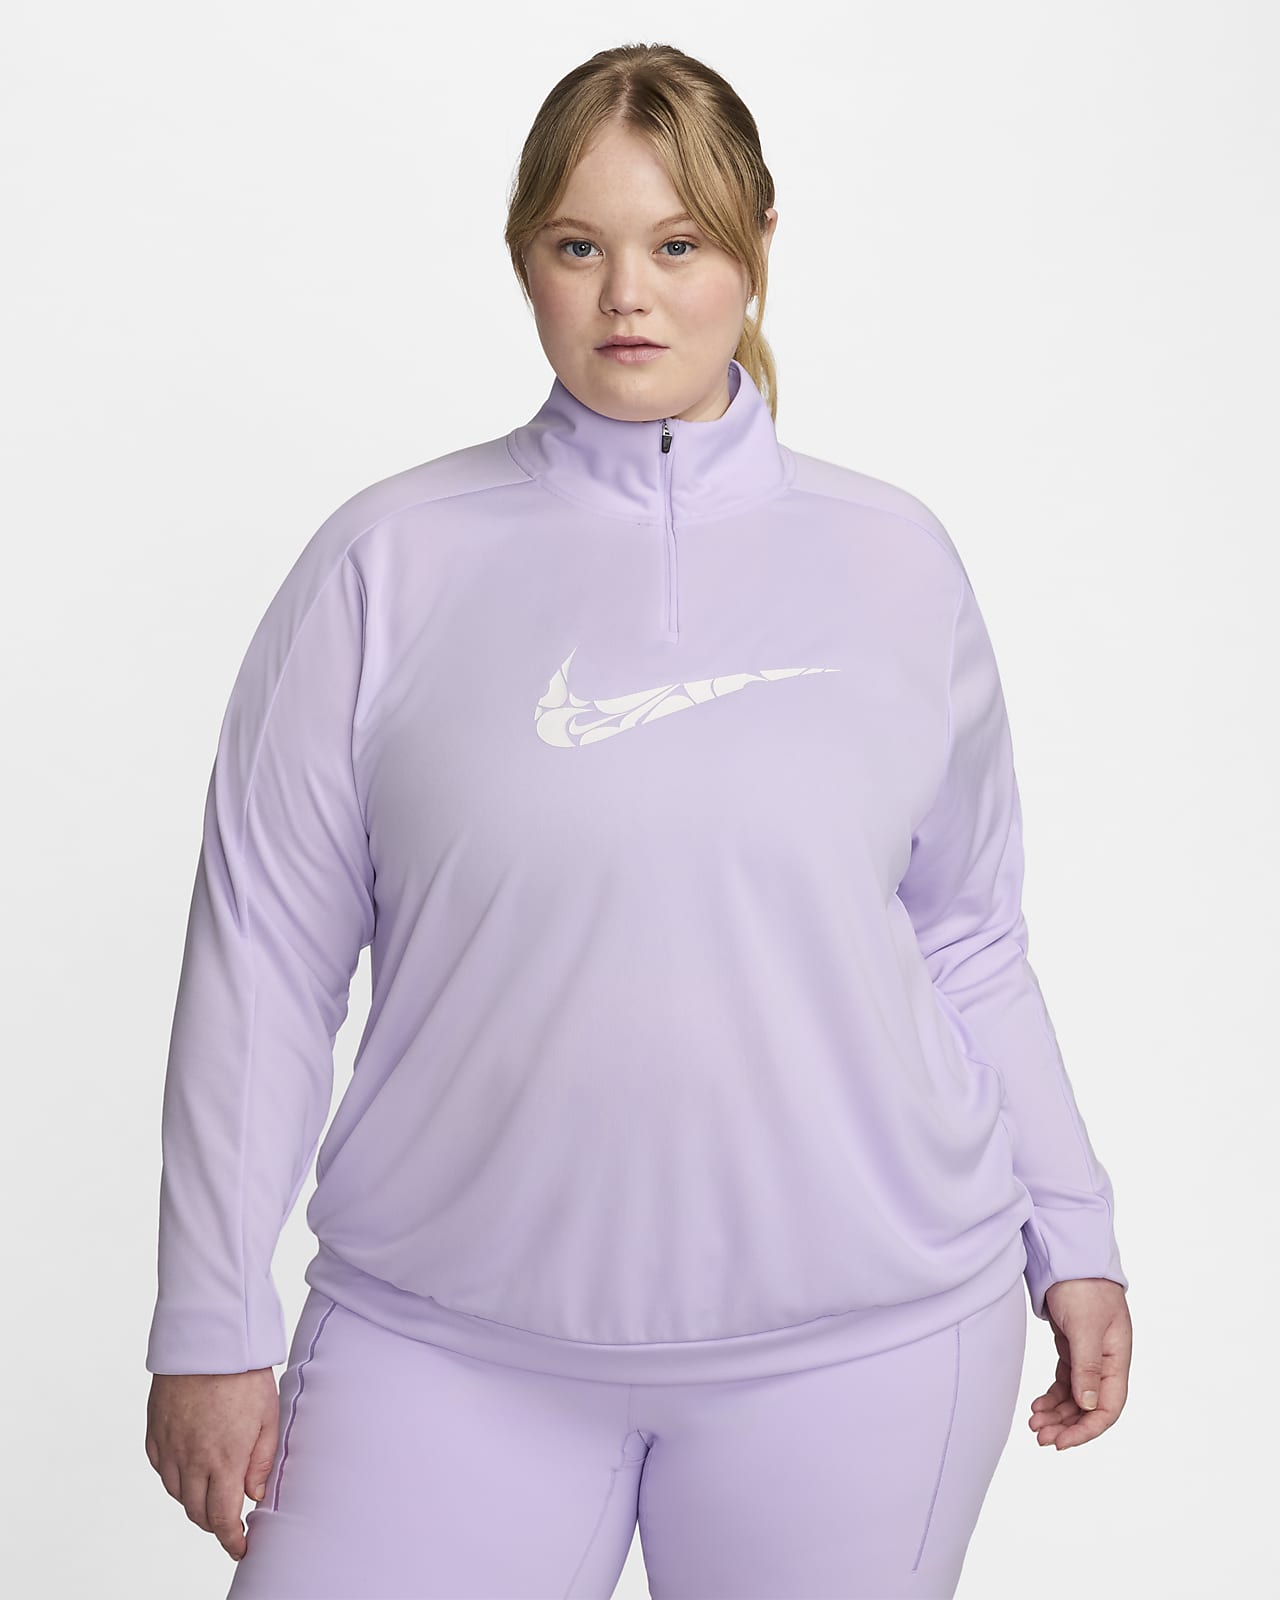 Vêtement deuxième couche à 1/4 de zip Dri-FIT Nike Swoosh pour femme (grande taille)